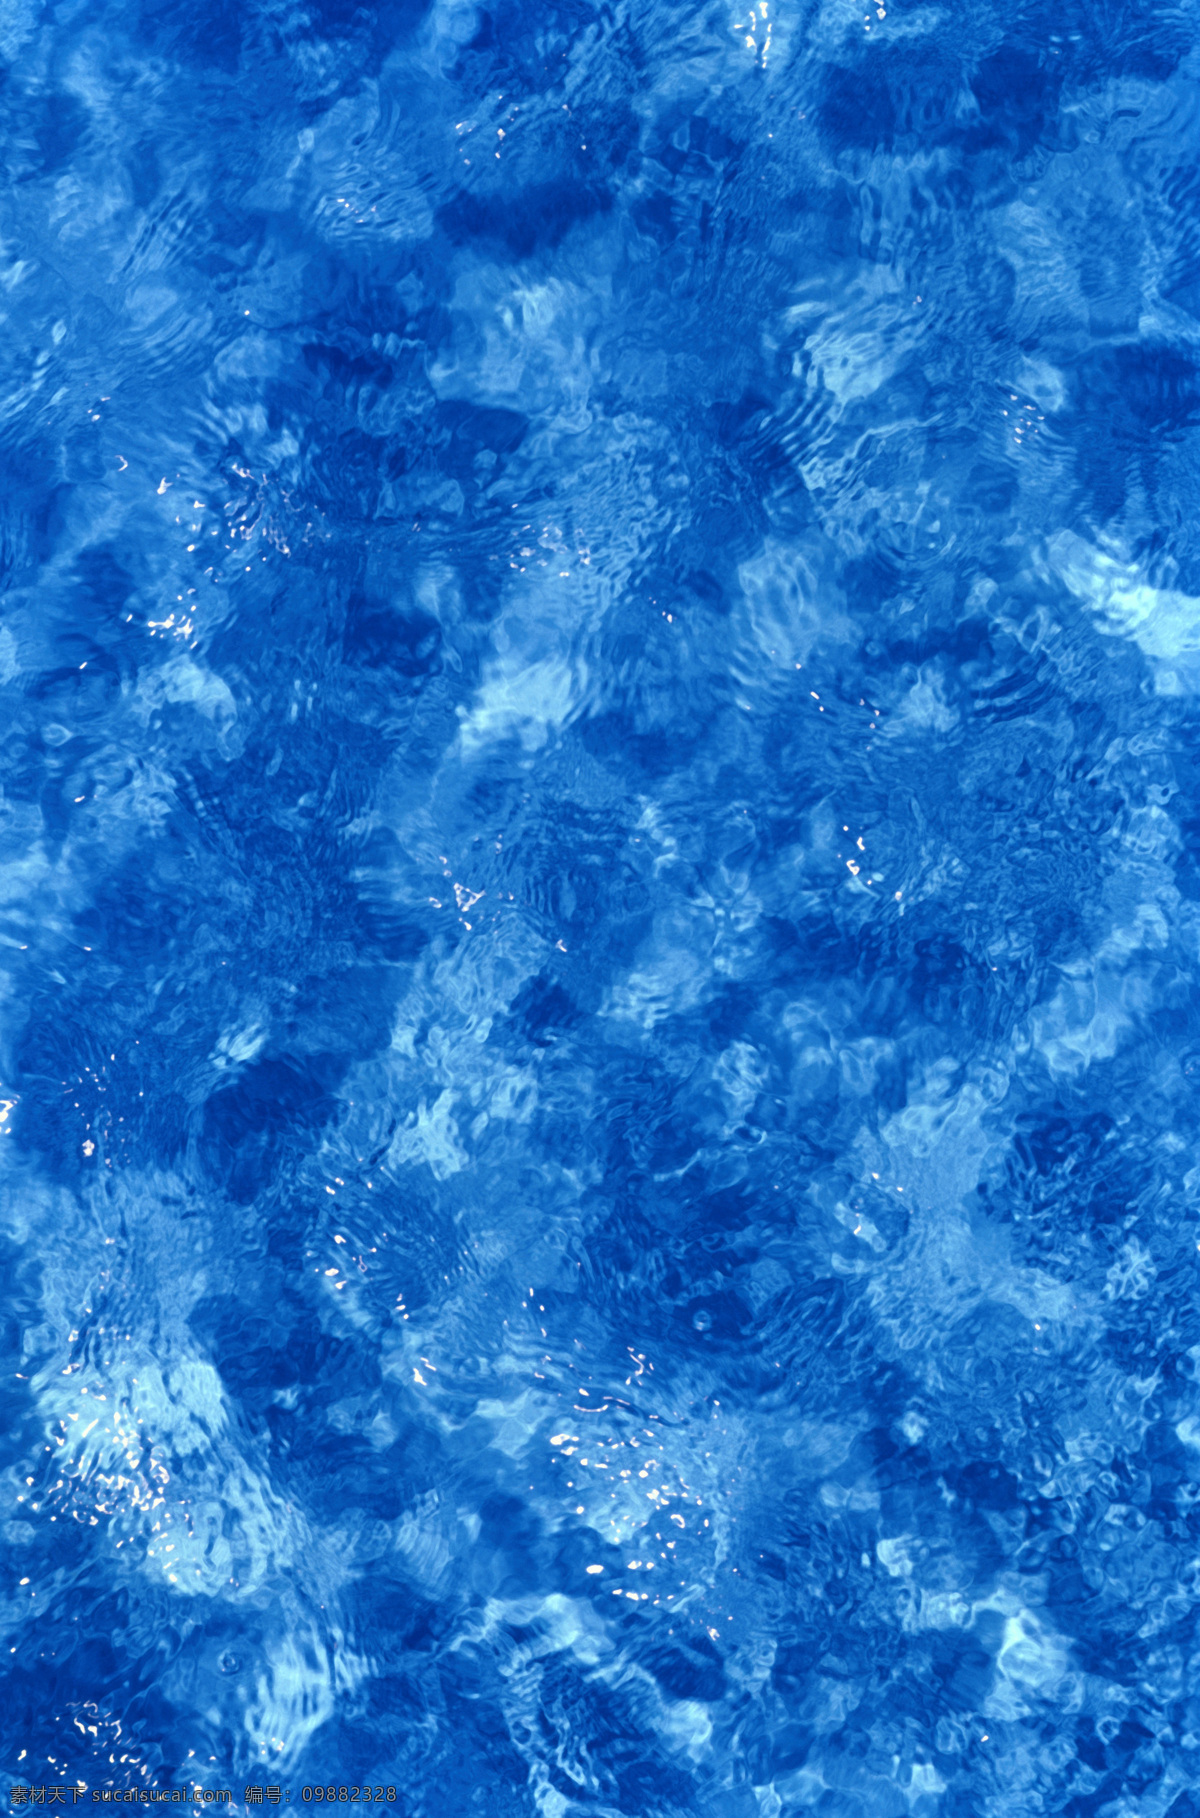 水纹背景素材 水纹 水纹背景 水纹素材 蓝色背景 蓝色水纹 壁纸 背景 水 水底 背景底纹 底纹边框